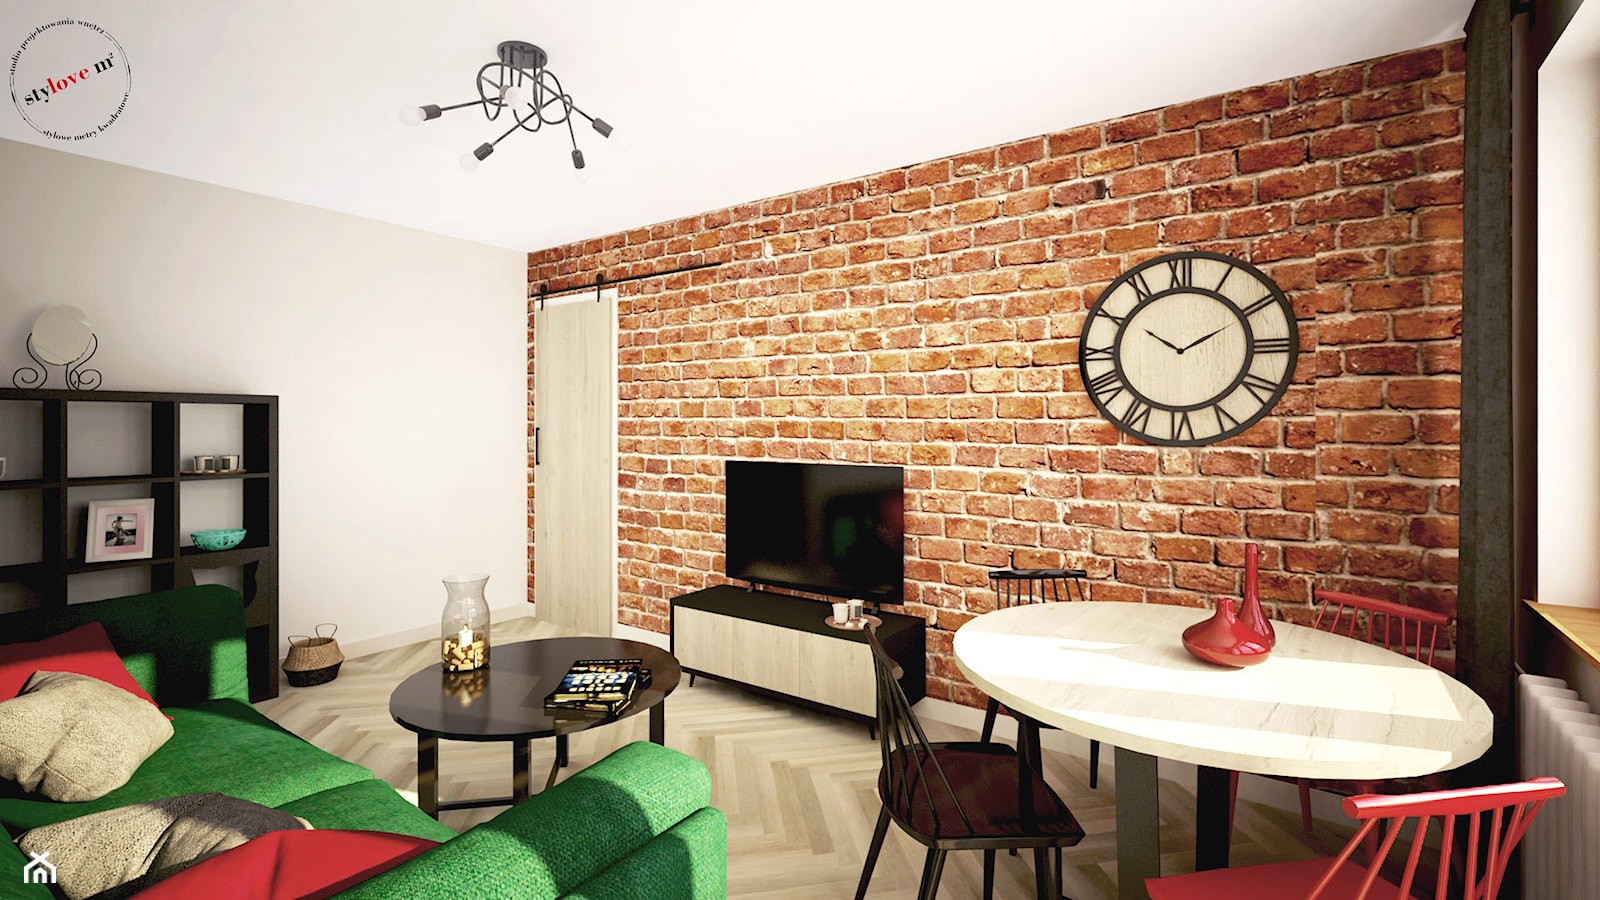 Mieszkanie z cegłą - Salon, styl industrialny - zdjęcie od STYLOVE M2 - Homebook